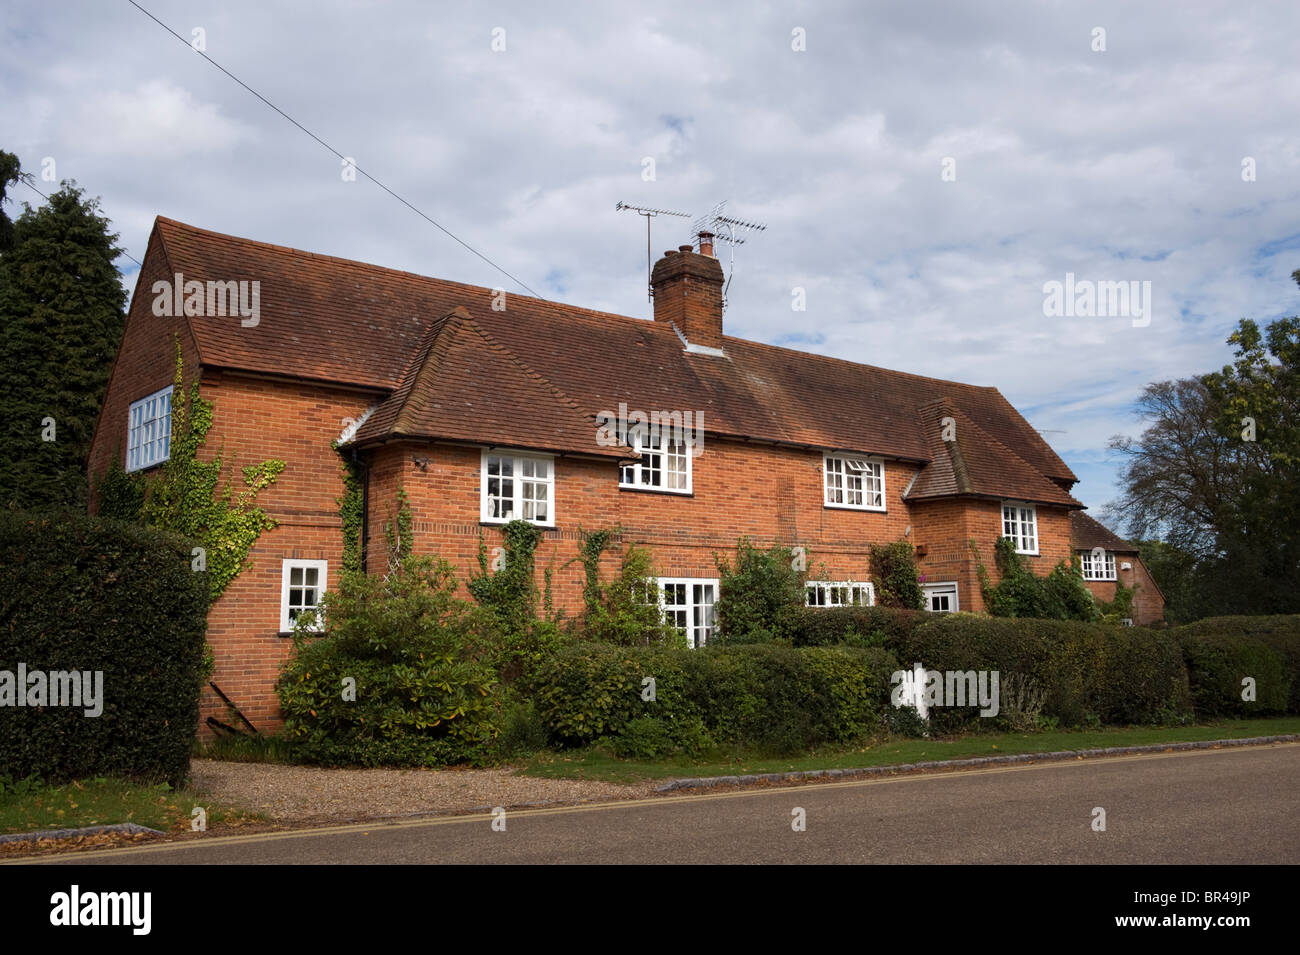 Construit en briques rouges traditionnelles maisons mitoyenne dans le village de Quaker Jordans Buckinghamshire UK Banque D'Images